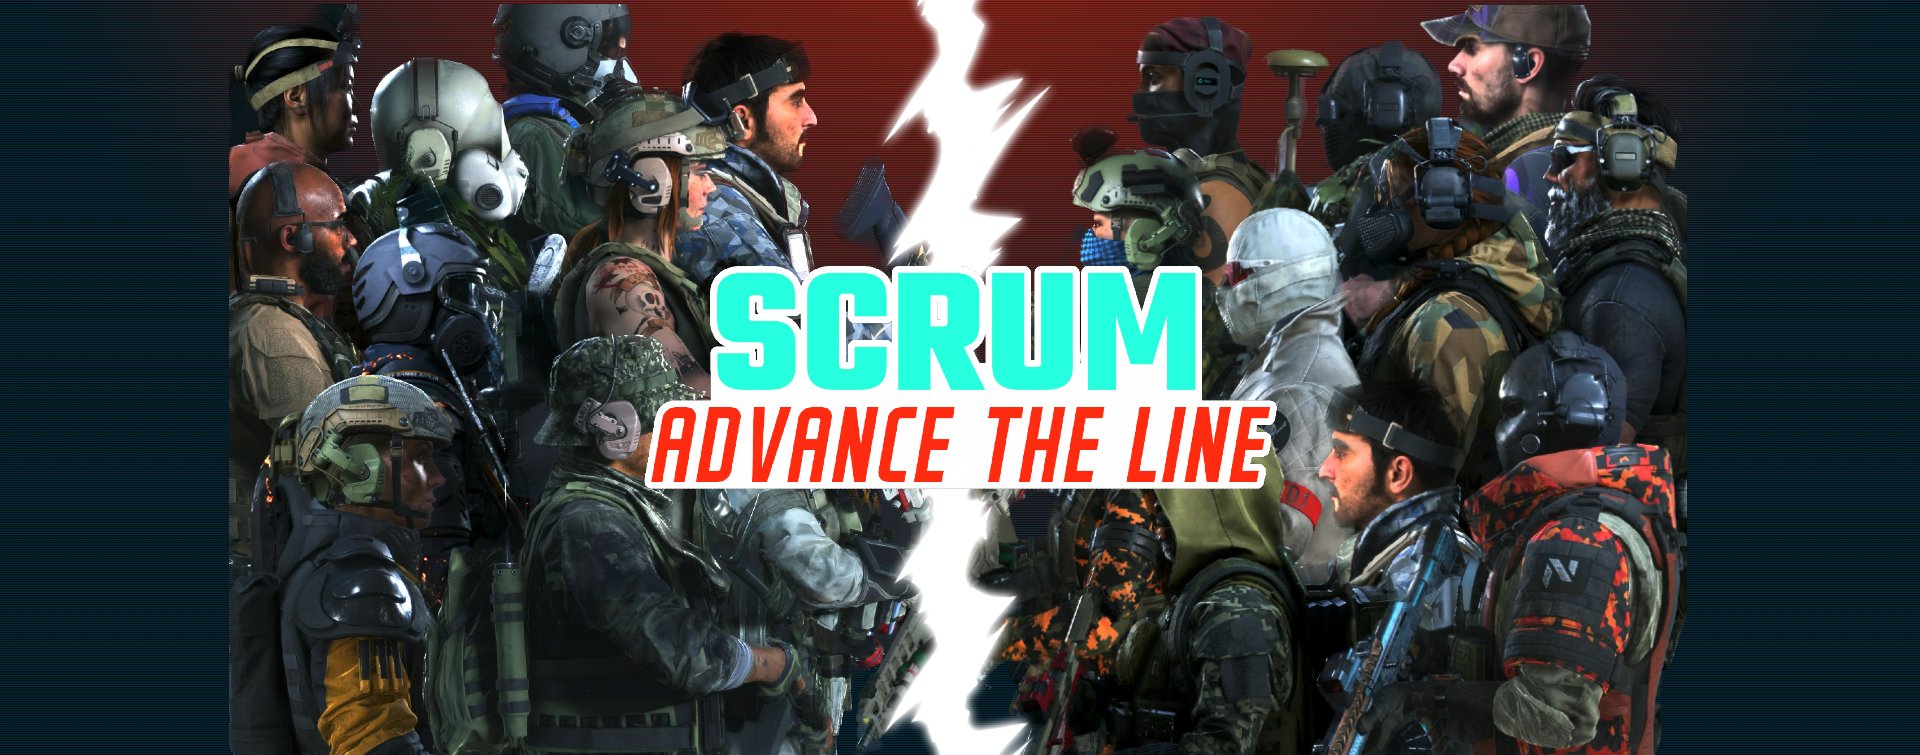 scrum-advance-the-line